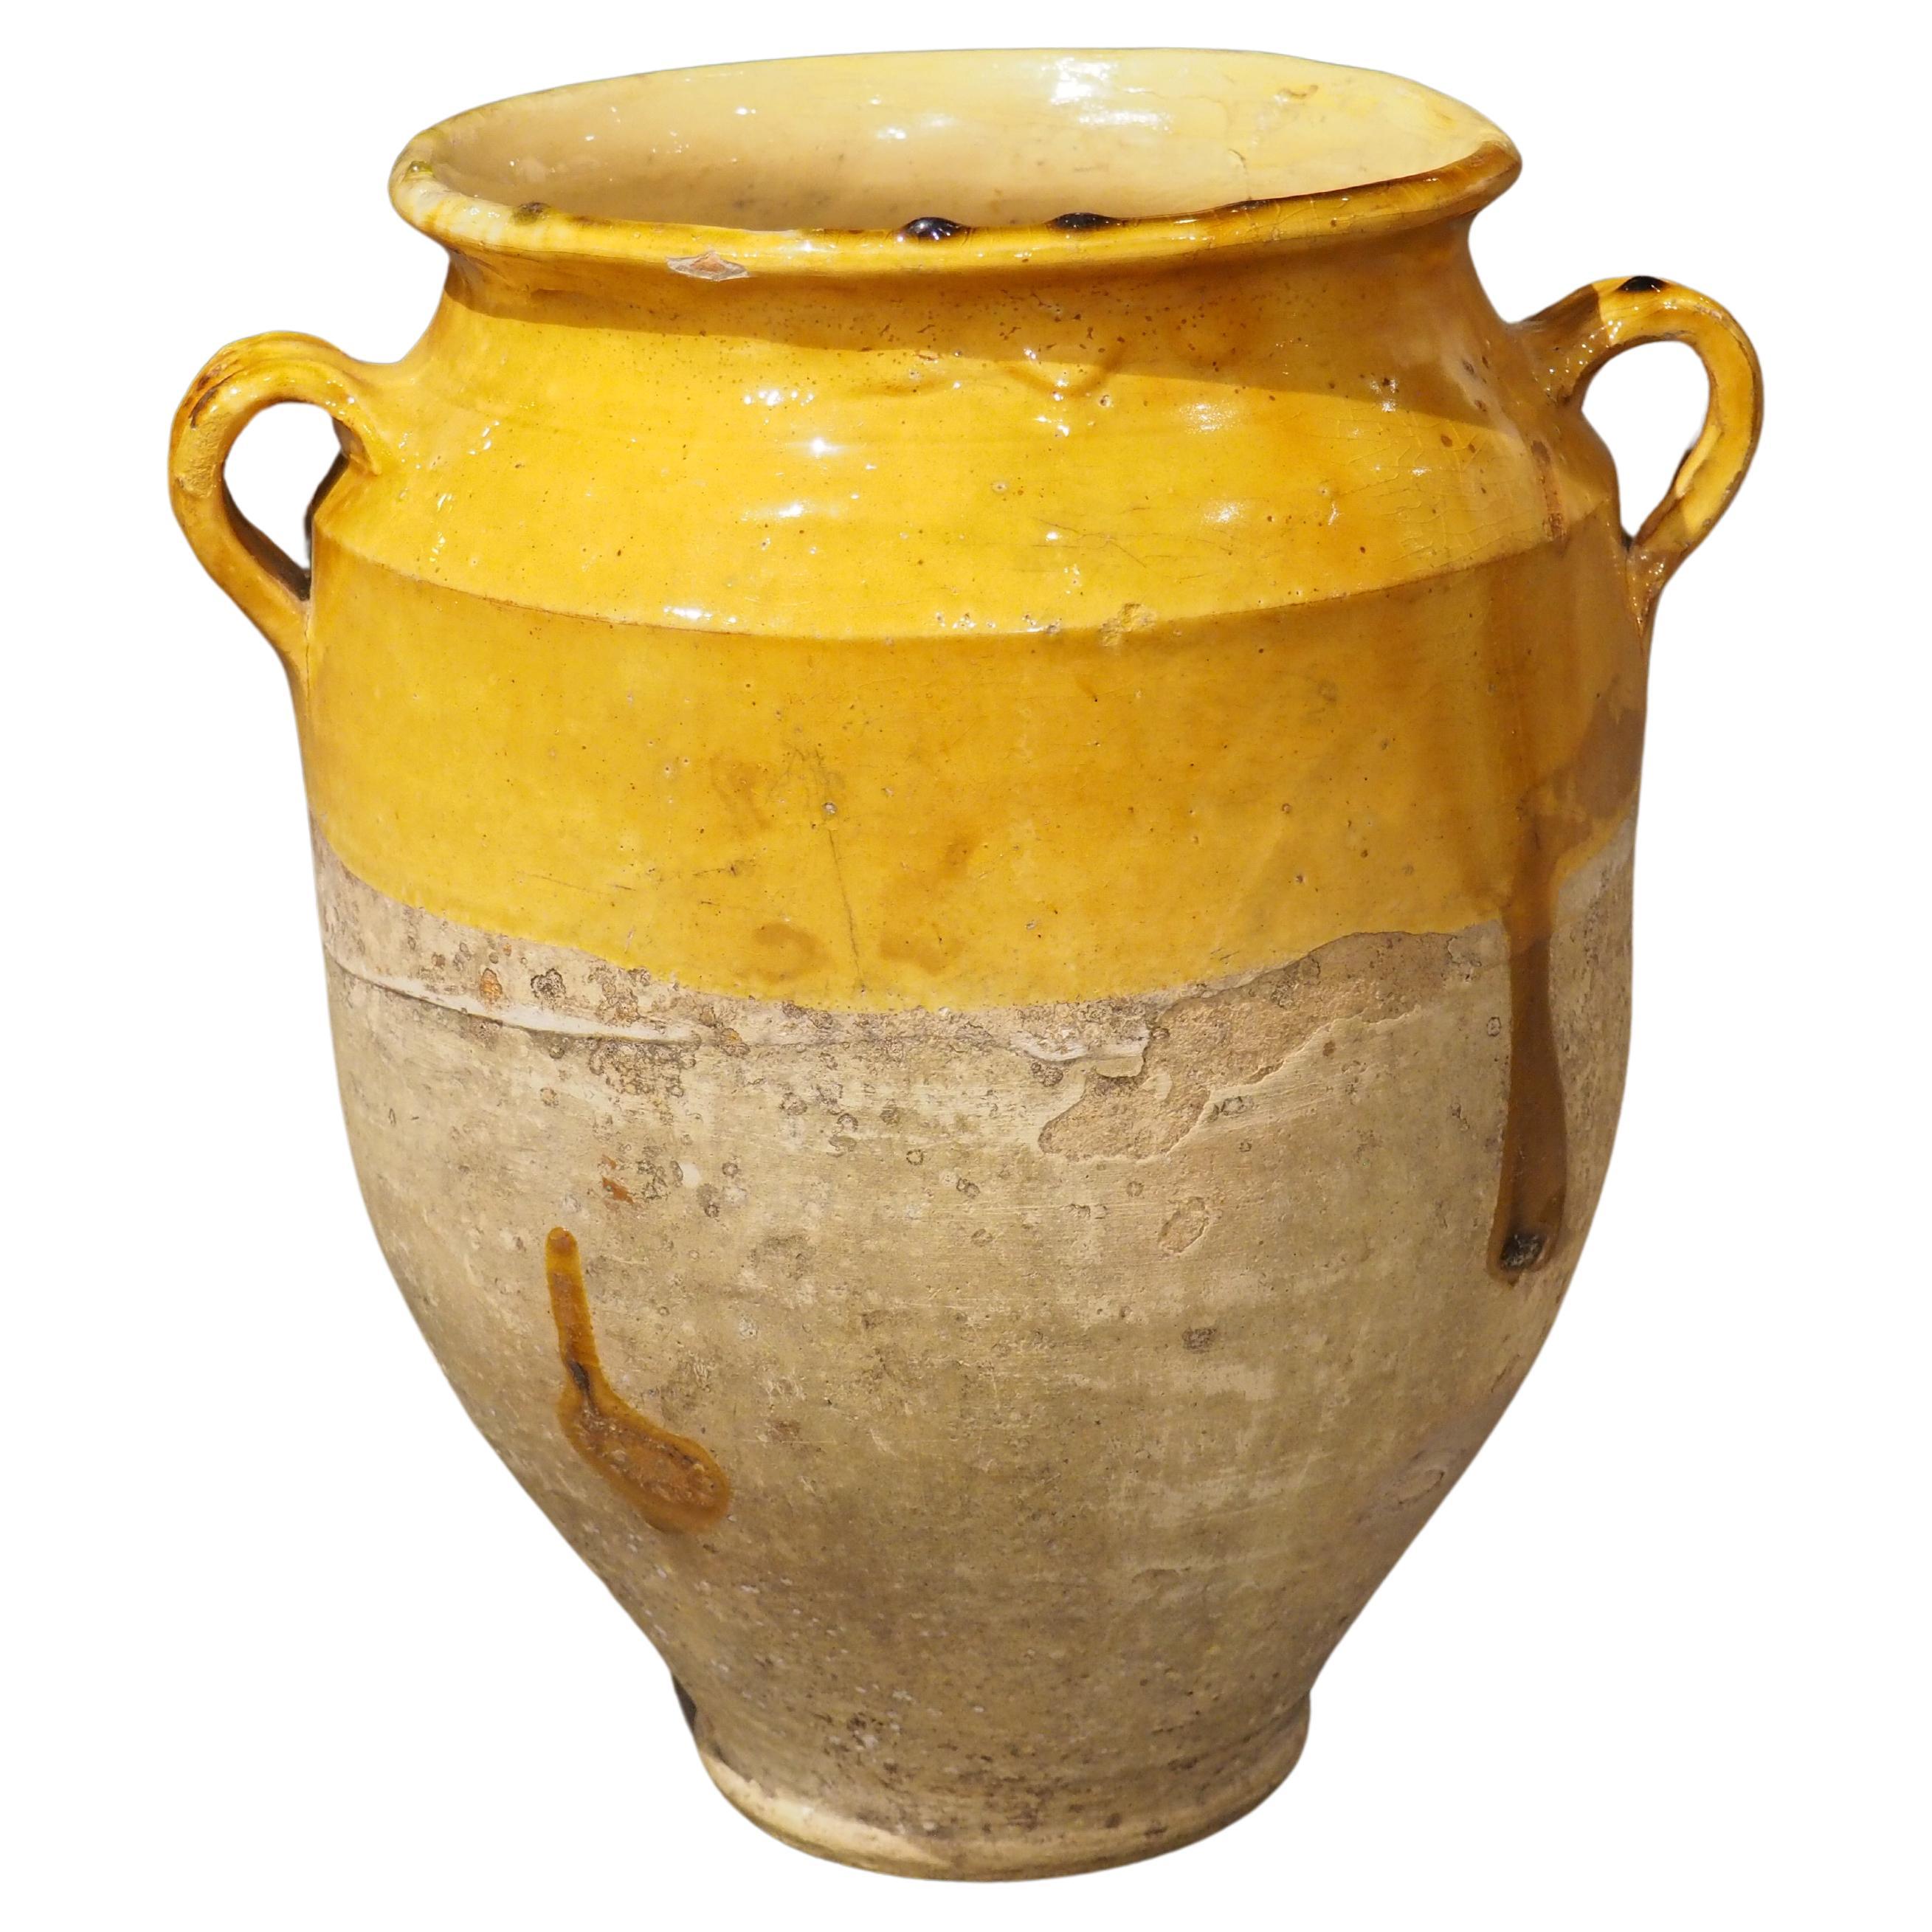 Pot à confit ancien du sud-ouest de la France